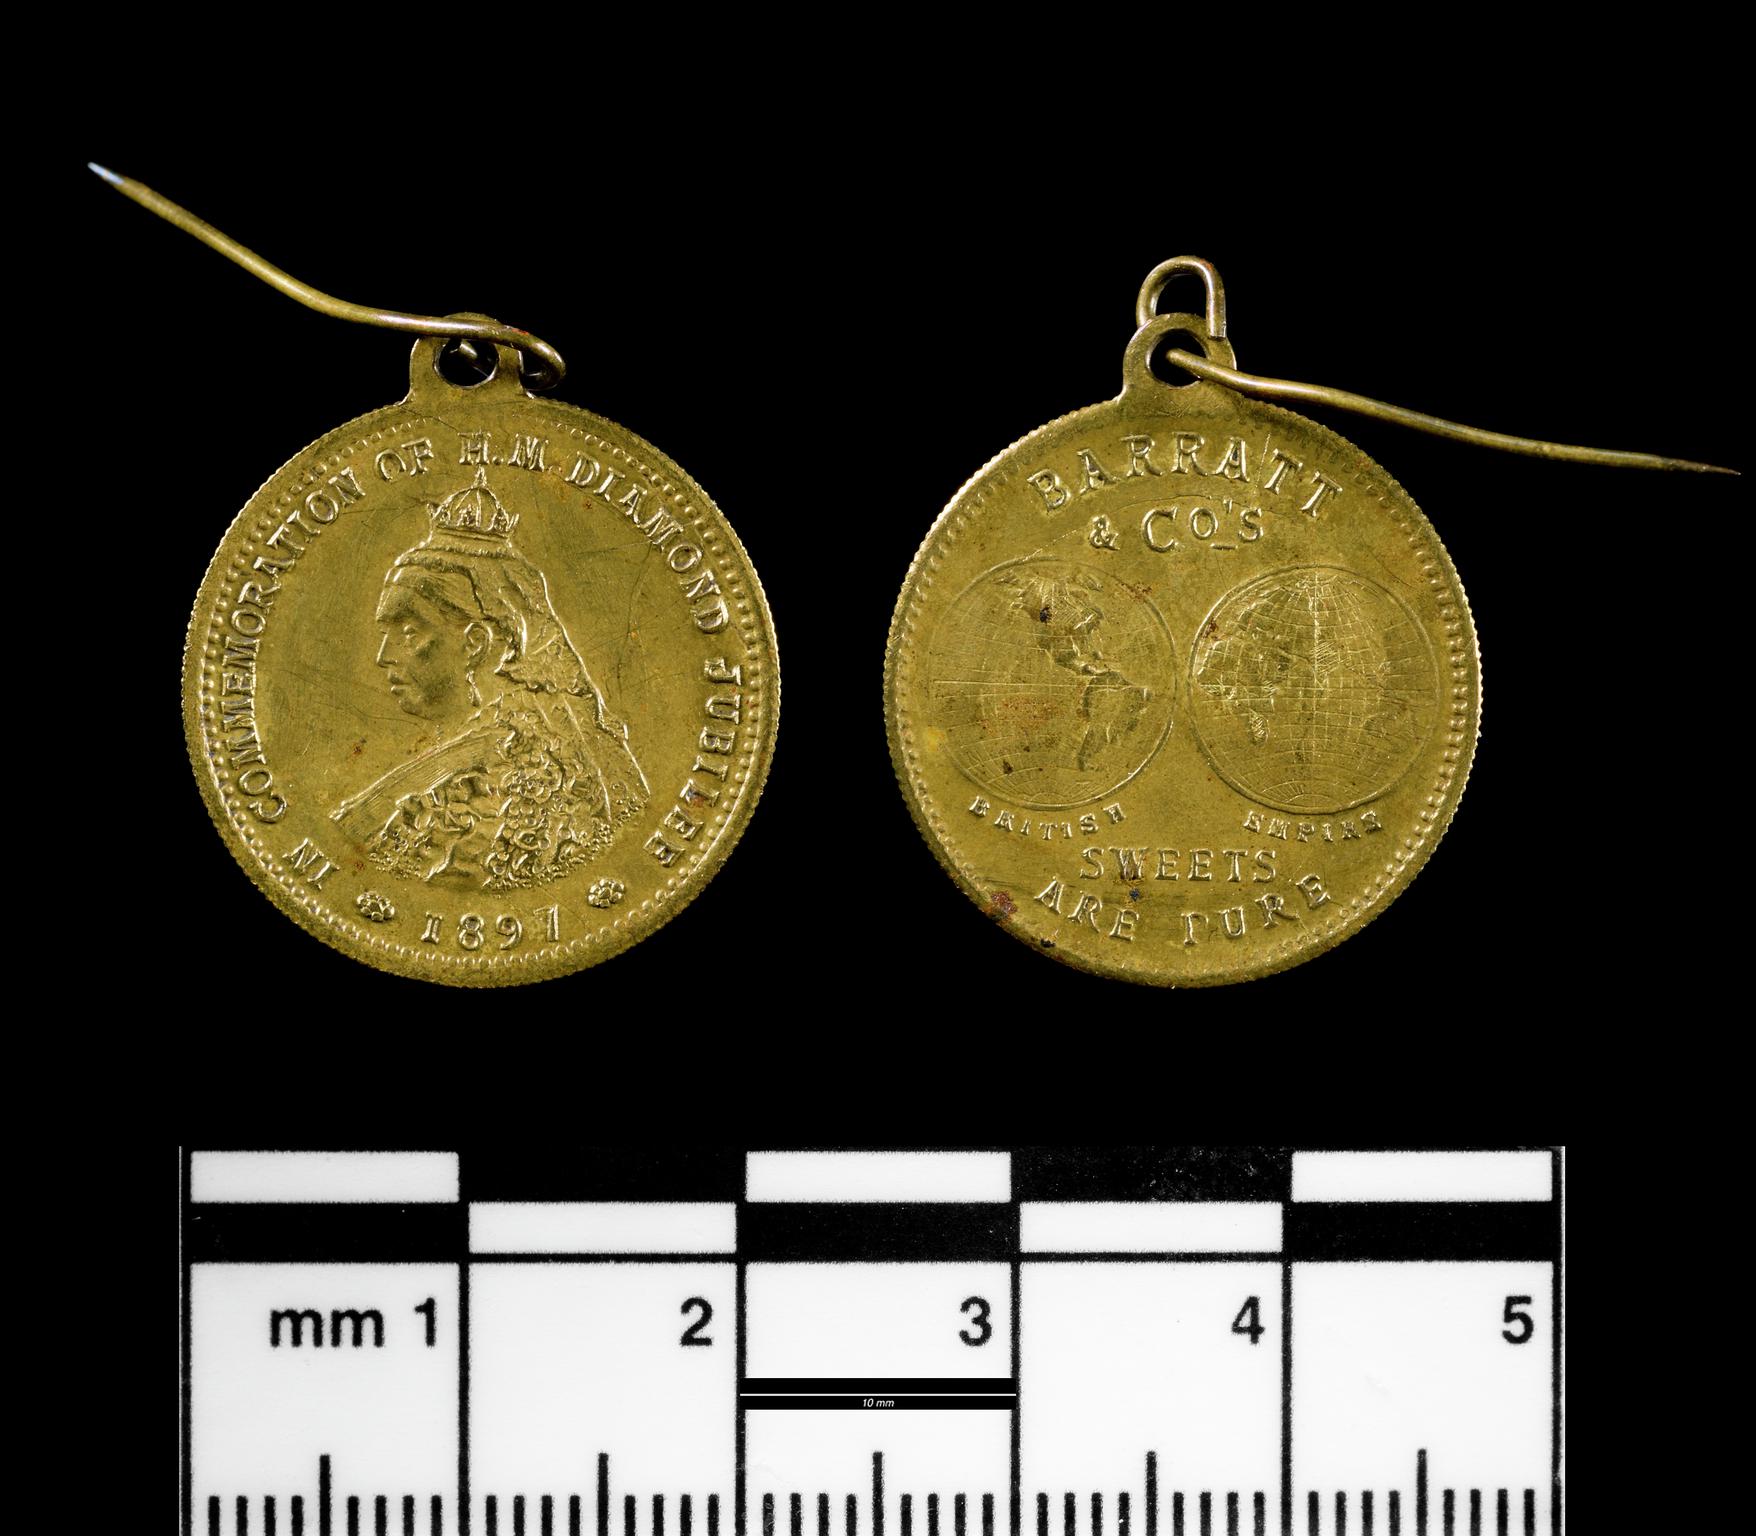 Queen Victoria Diamond Jubilee 1897, medal